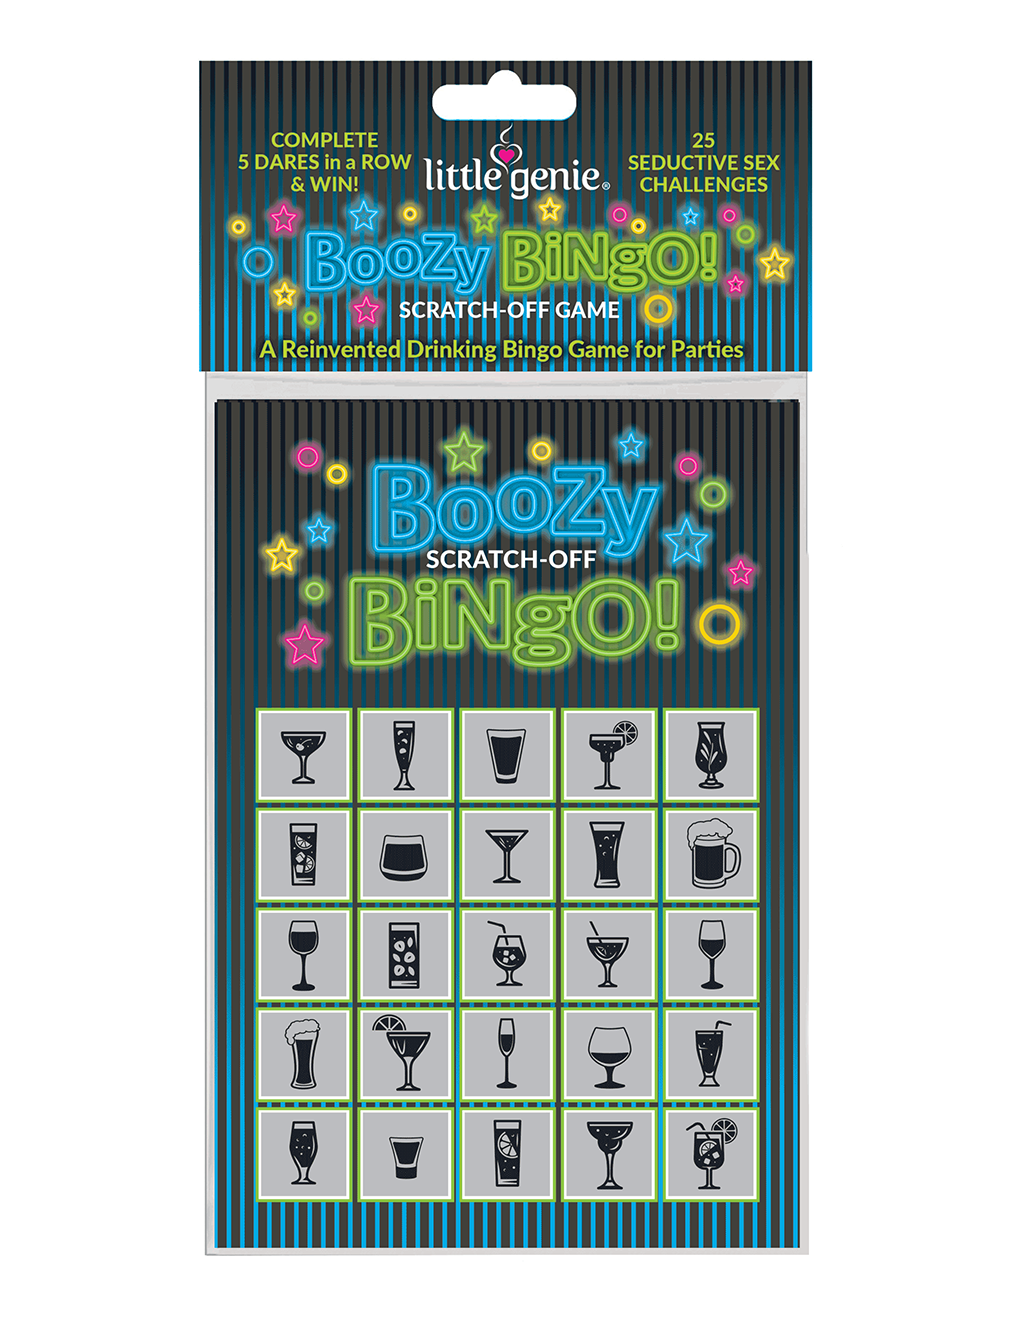 Boozy Bingo Scratch-Off Drinking Game